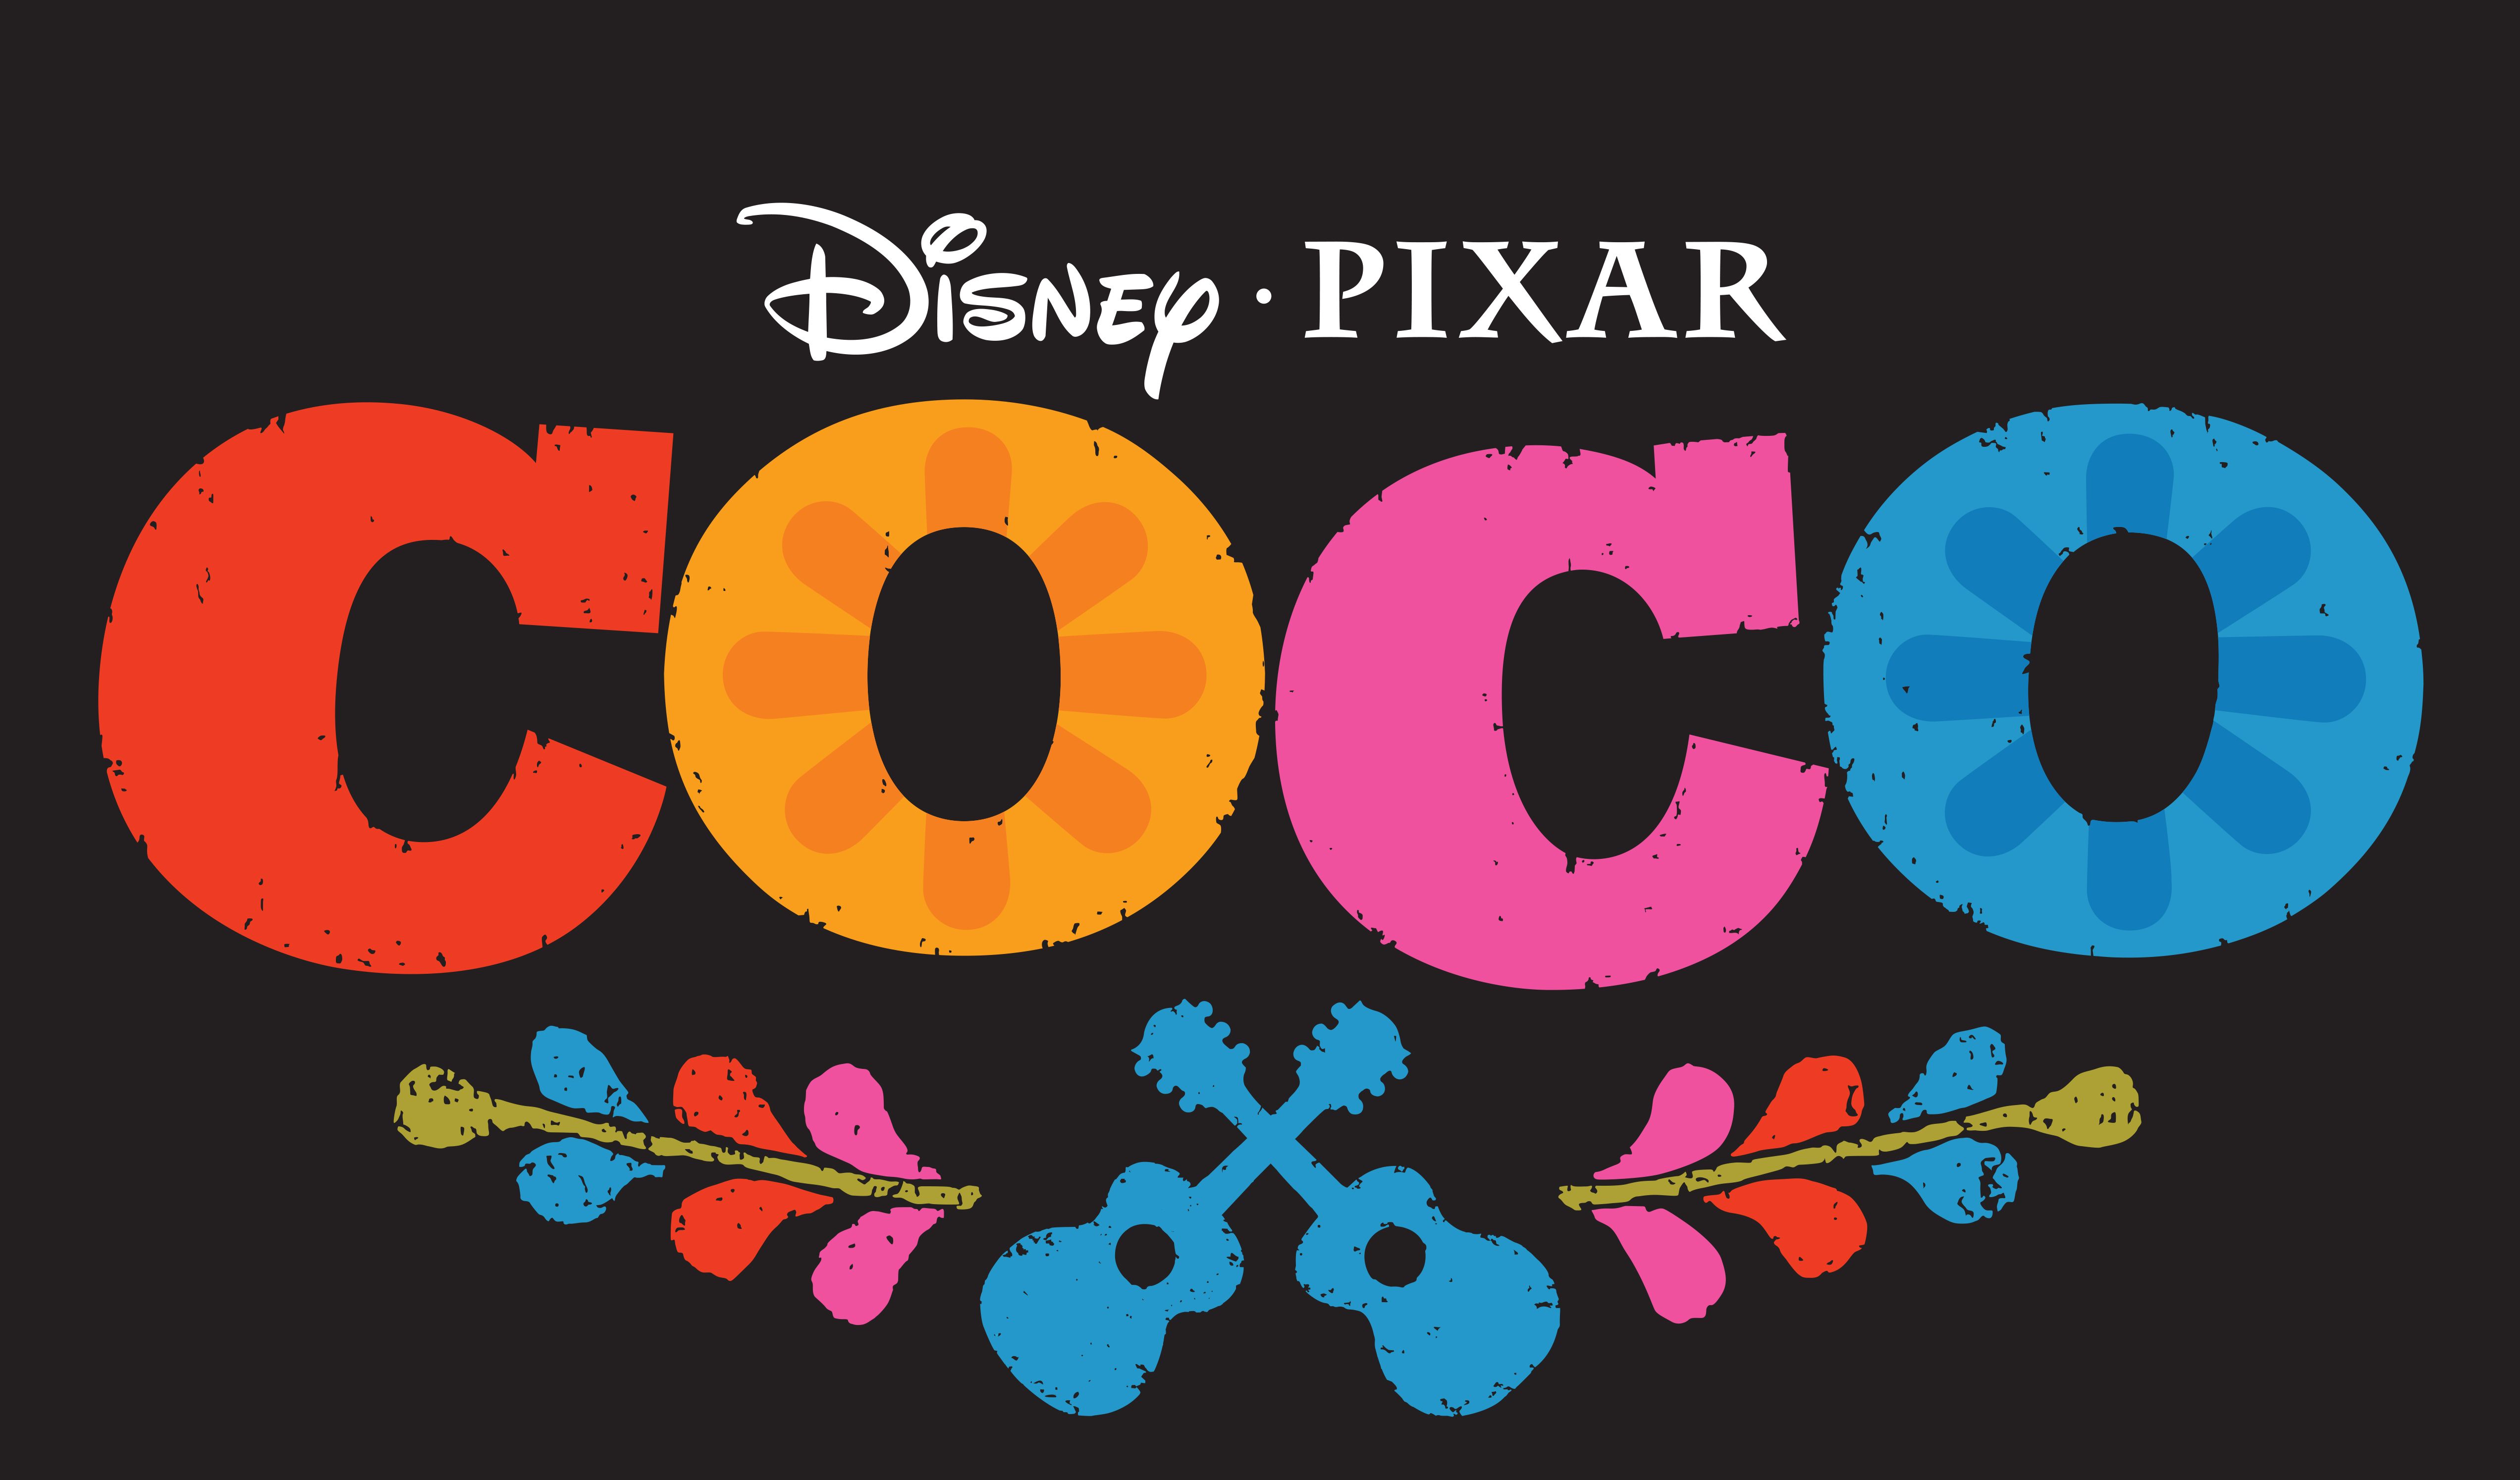 Pixarjev Coco se bo poklonil ikonični umetnici Fridi Kahlo